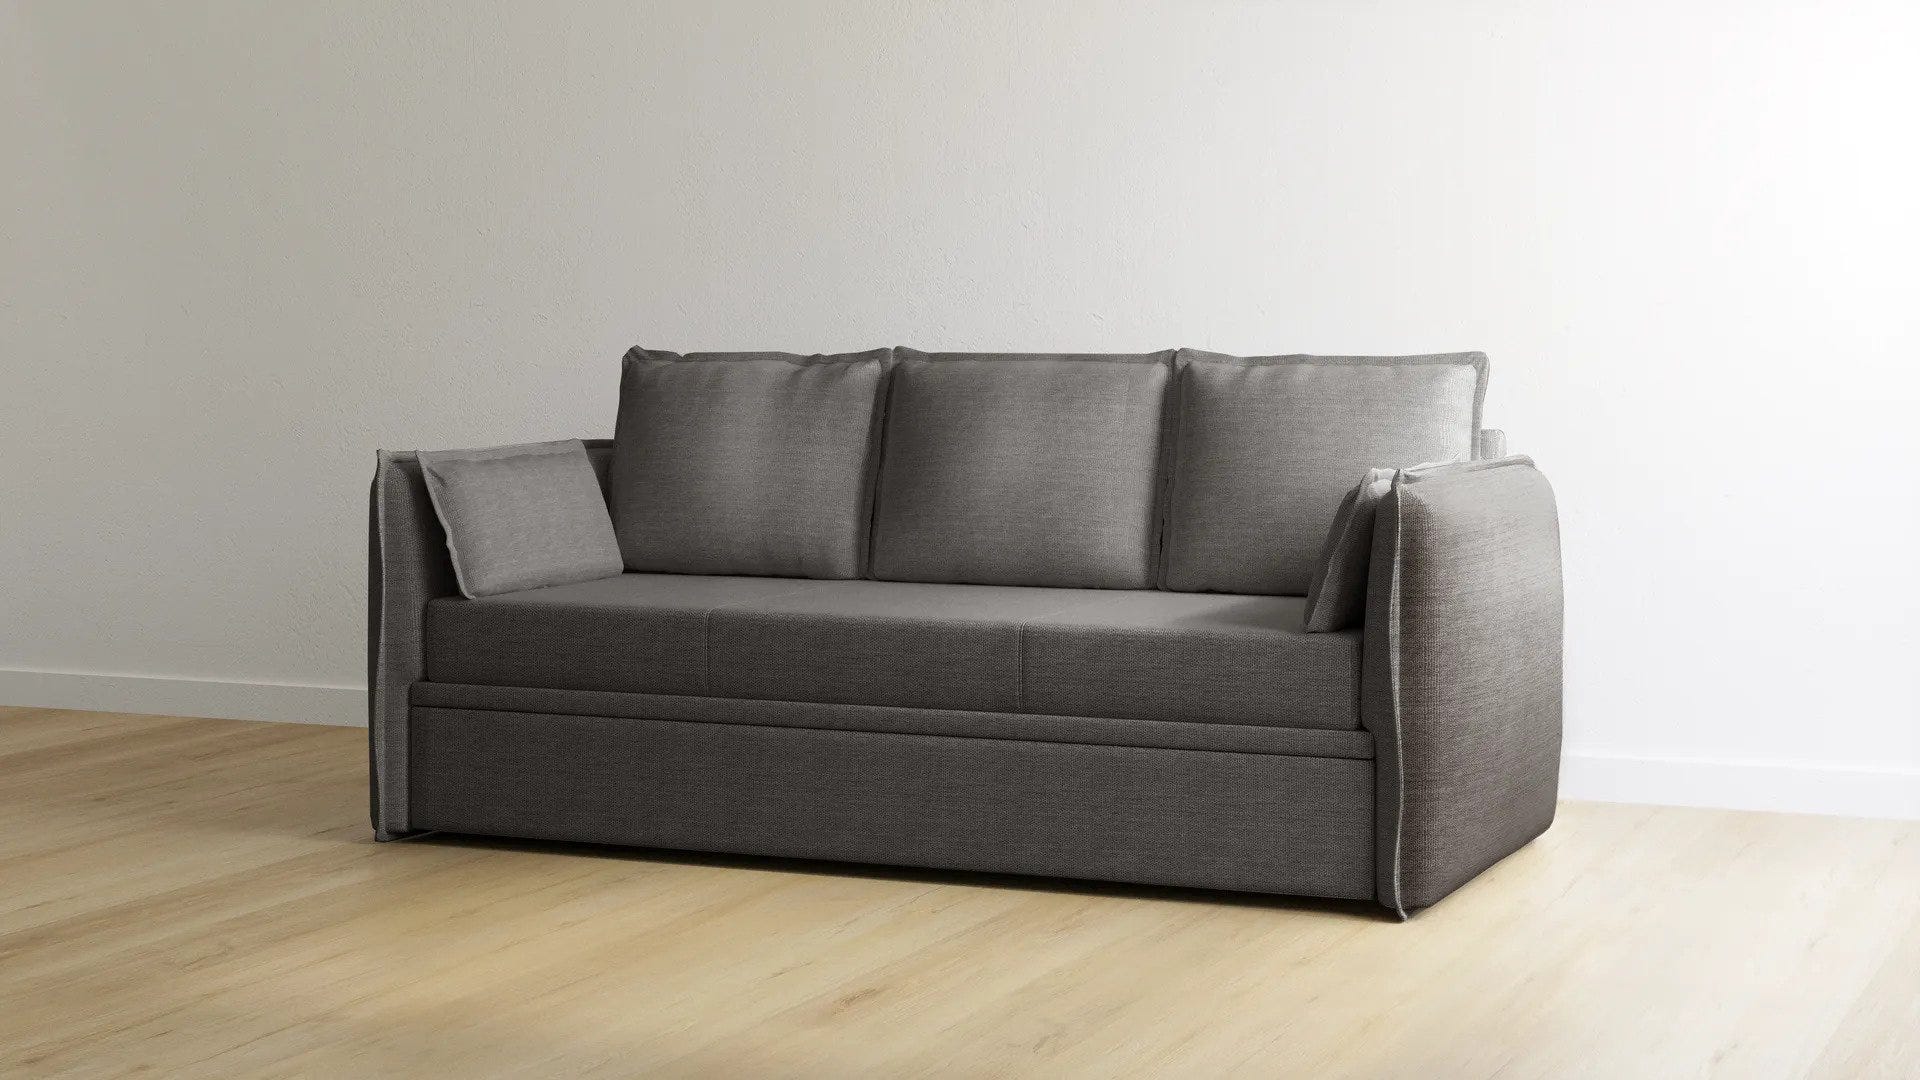 presentación variante color gris oscuro para sofa cama emma